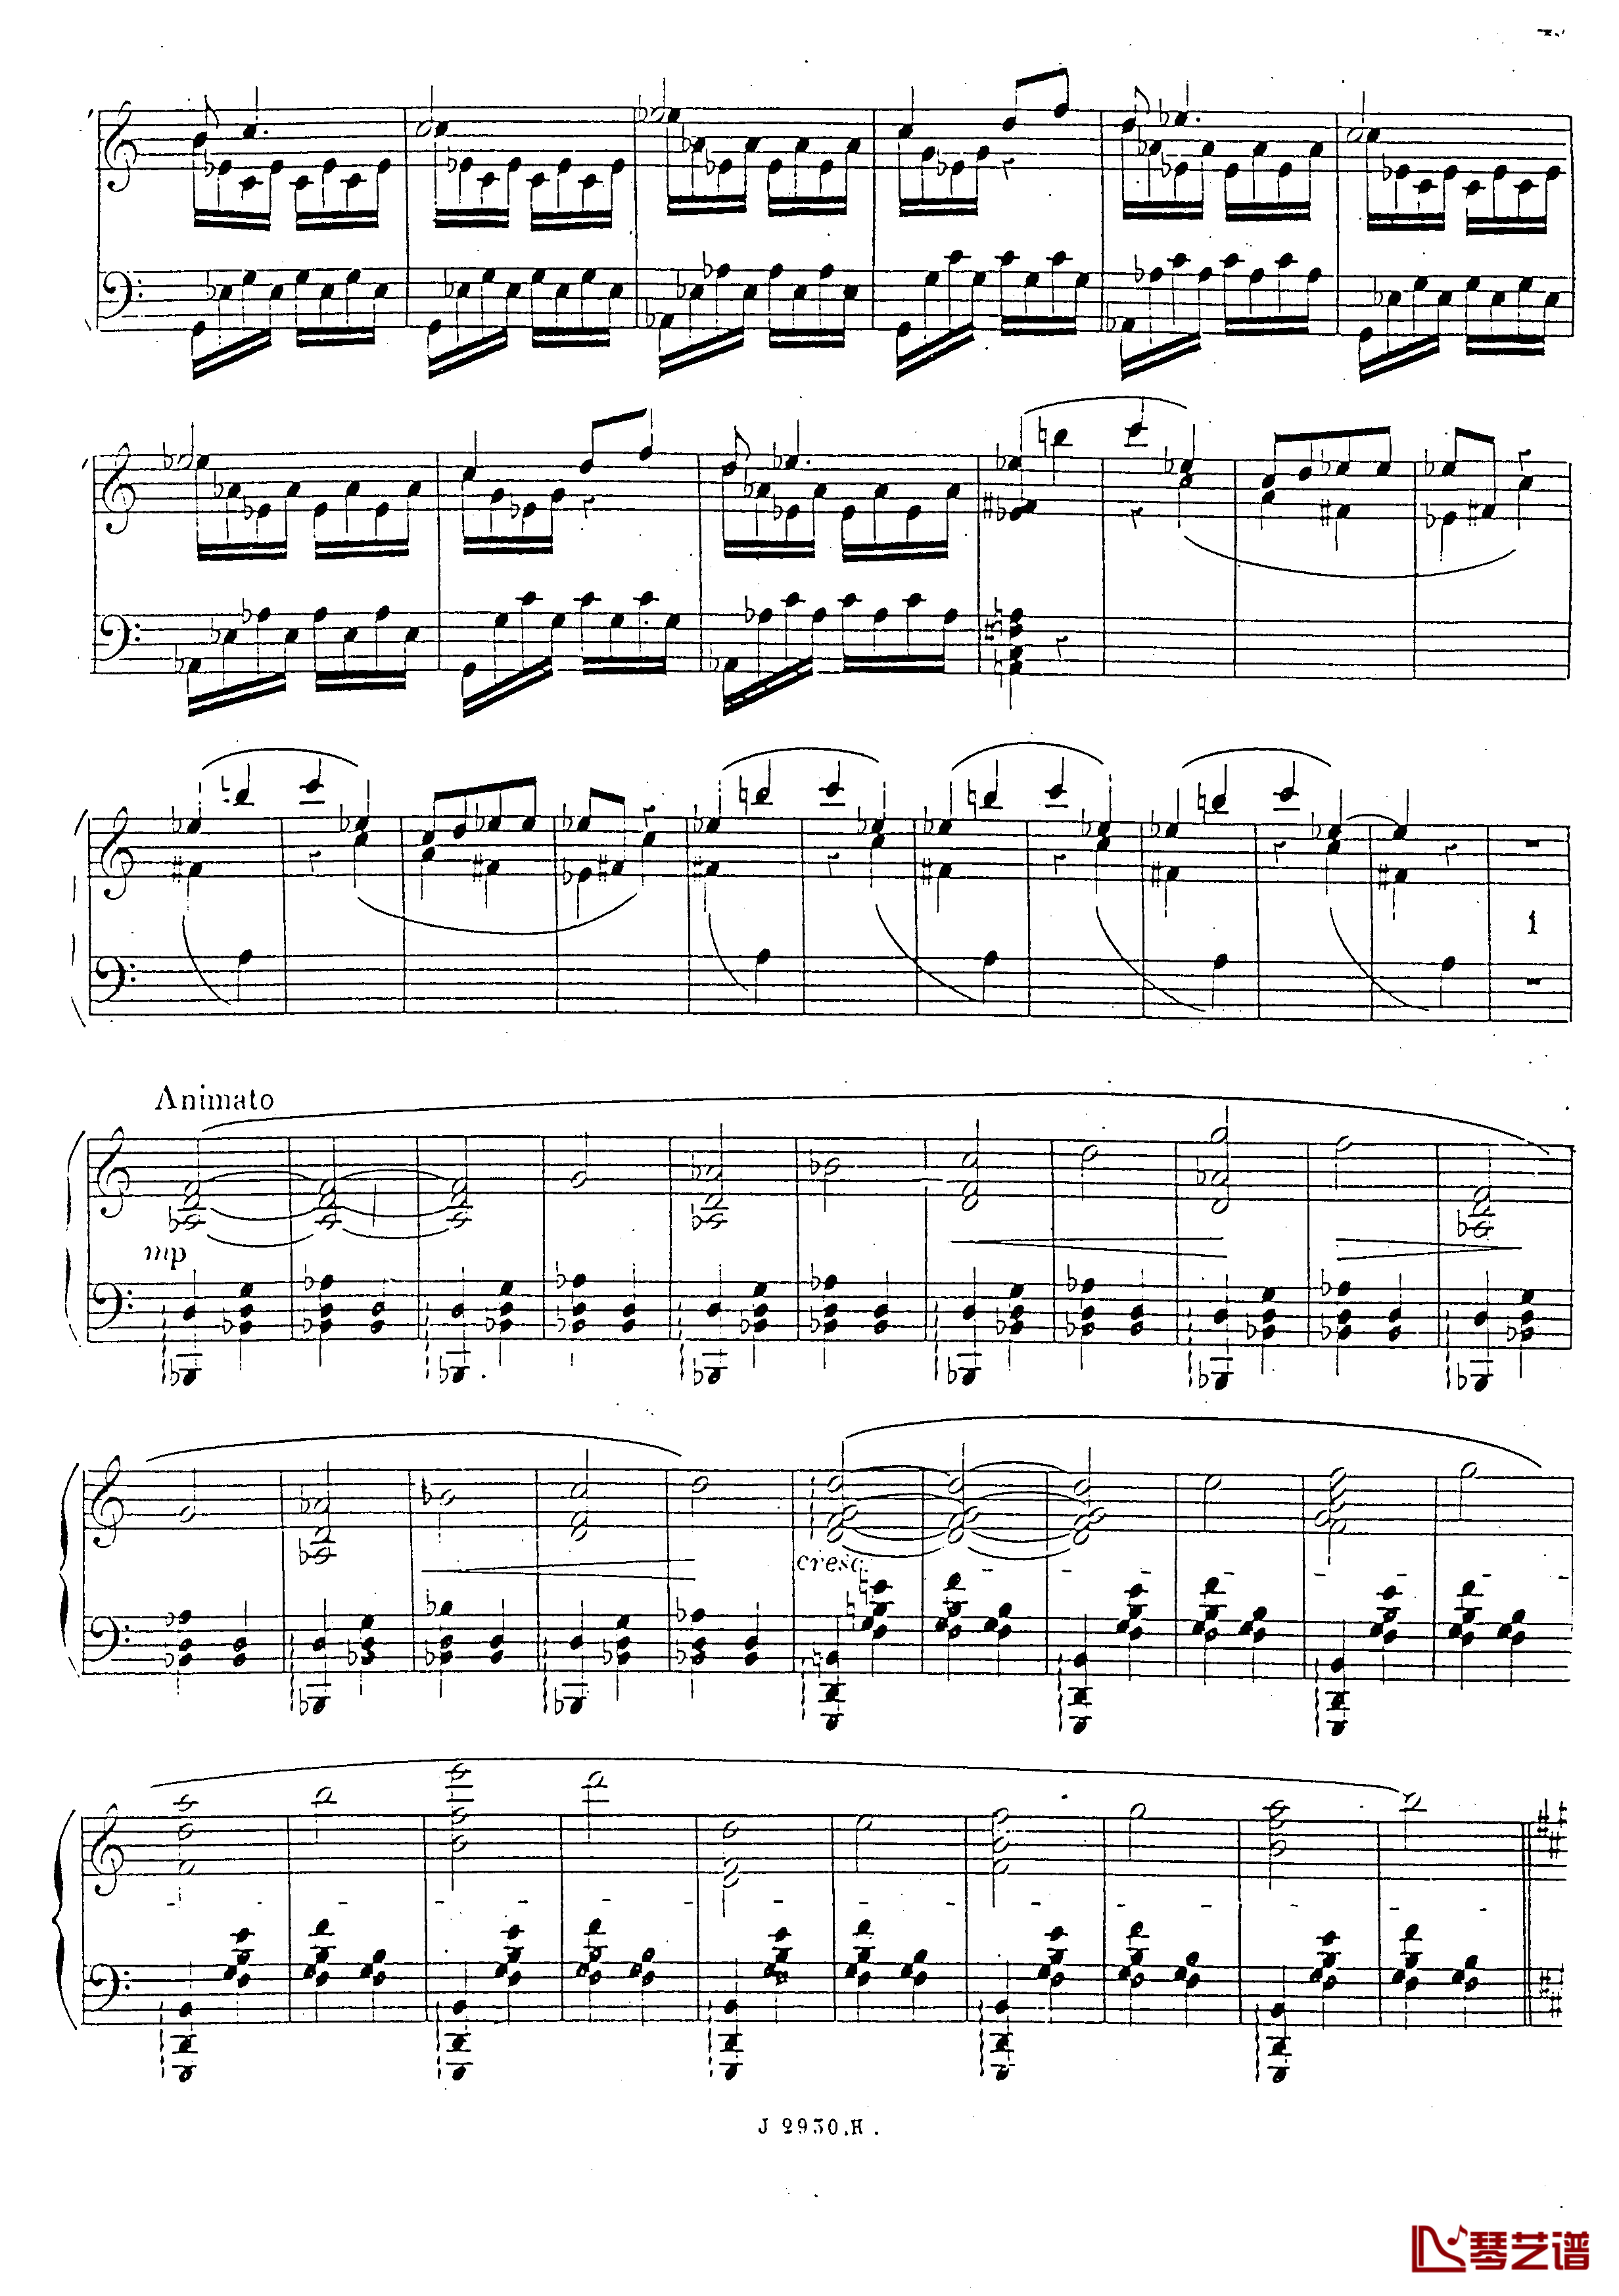 a小调第四钢琴奏鸣曲钢琴谱-安东 鲁宾斯坦- Op.10050